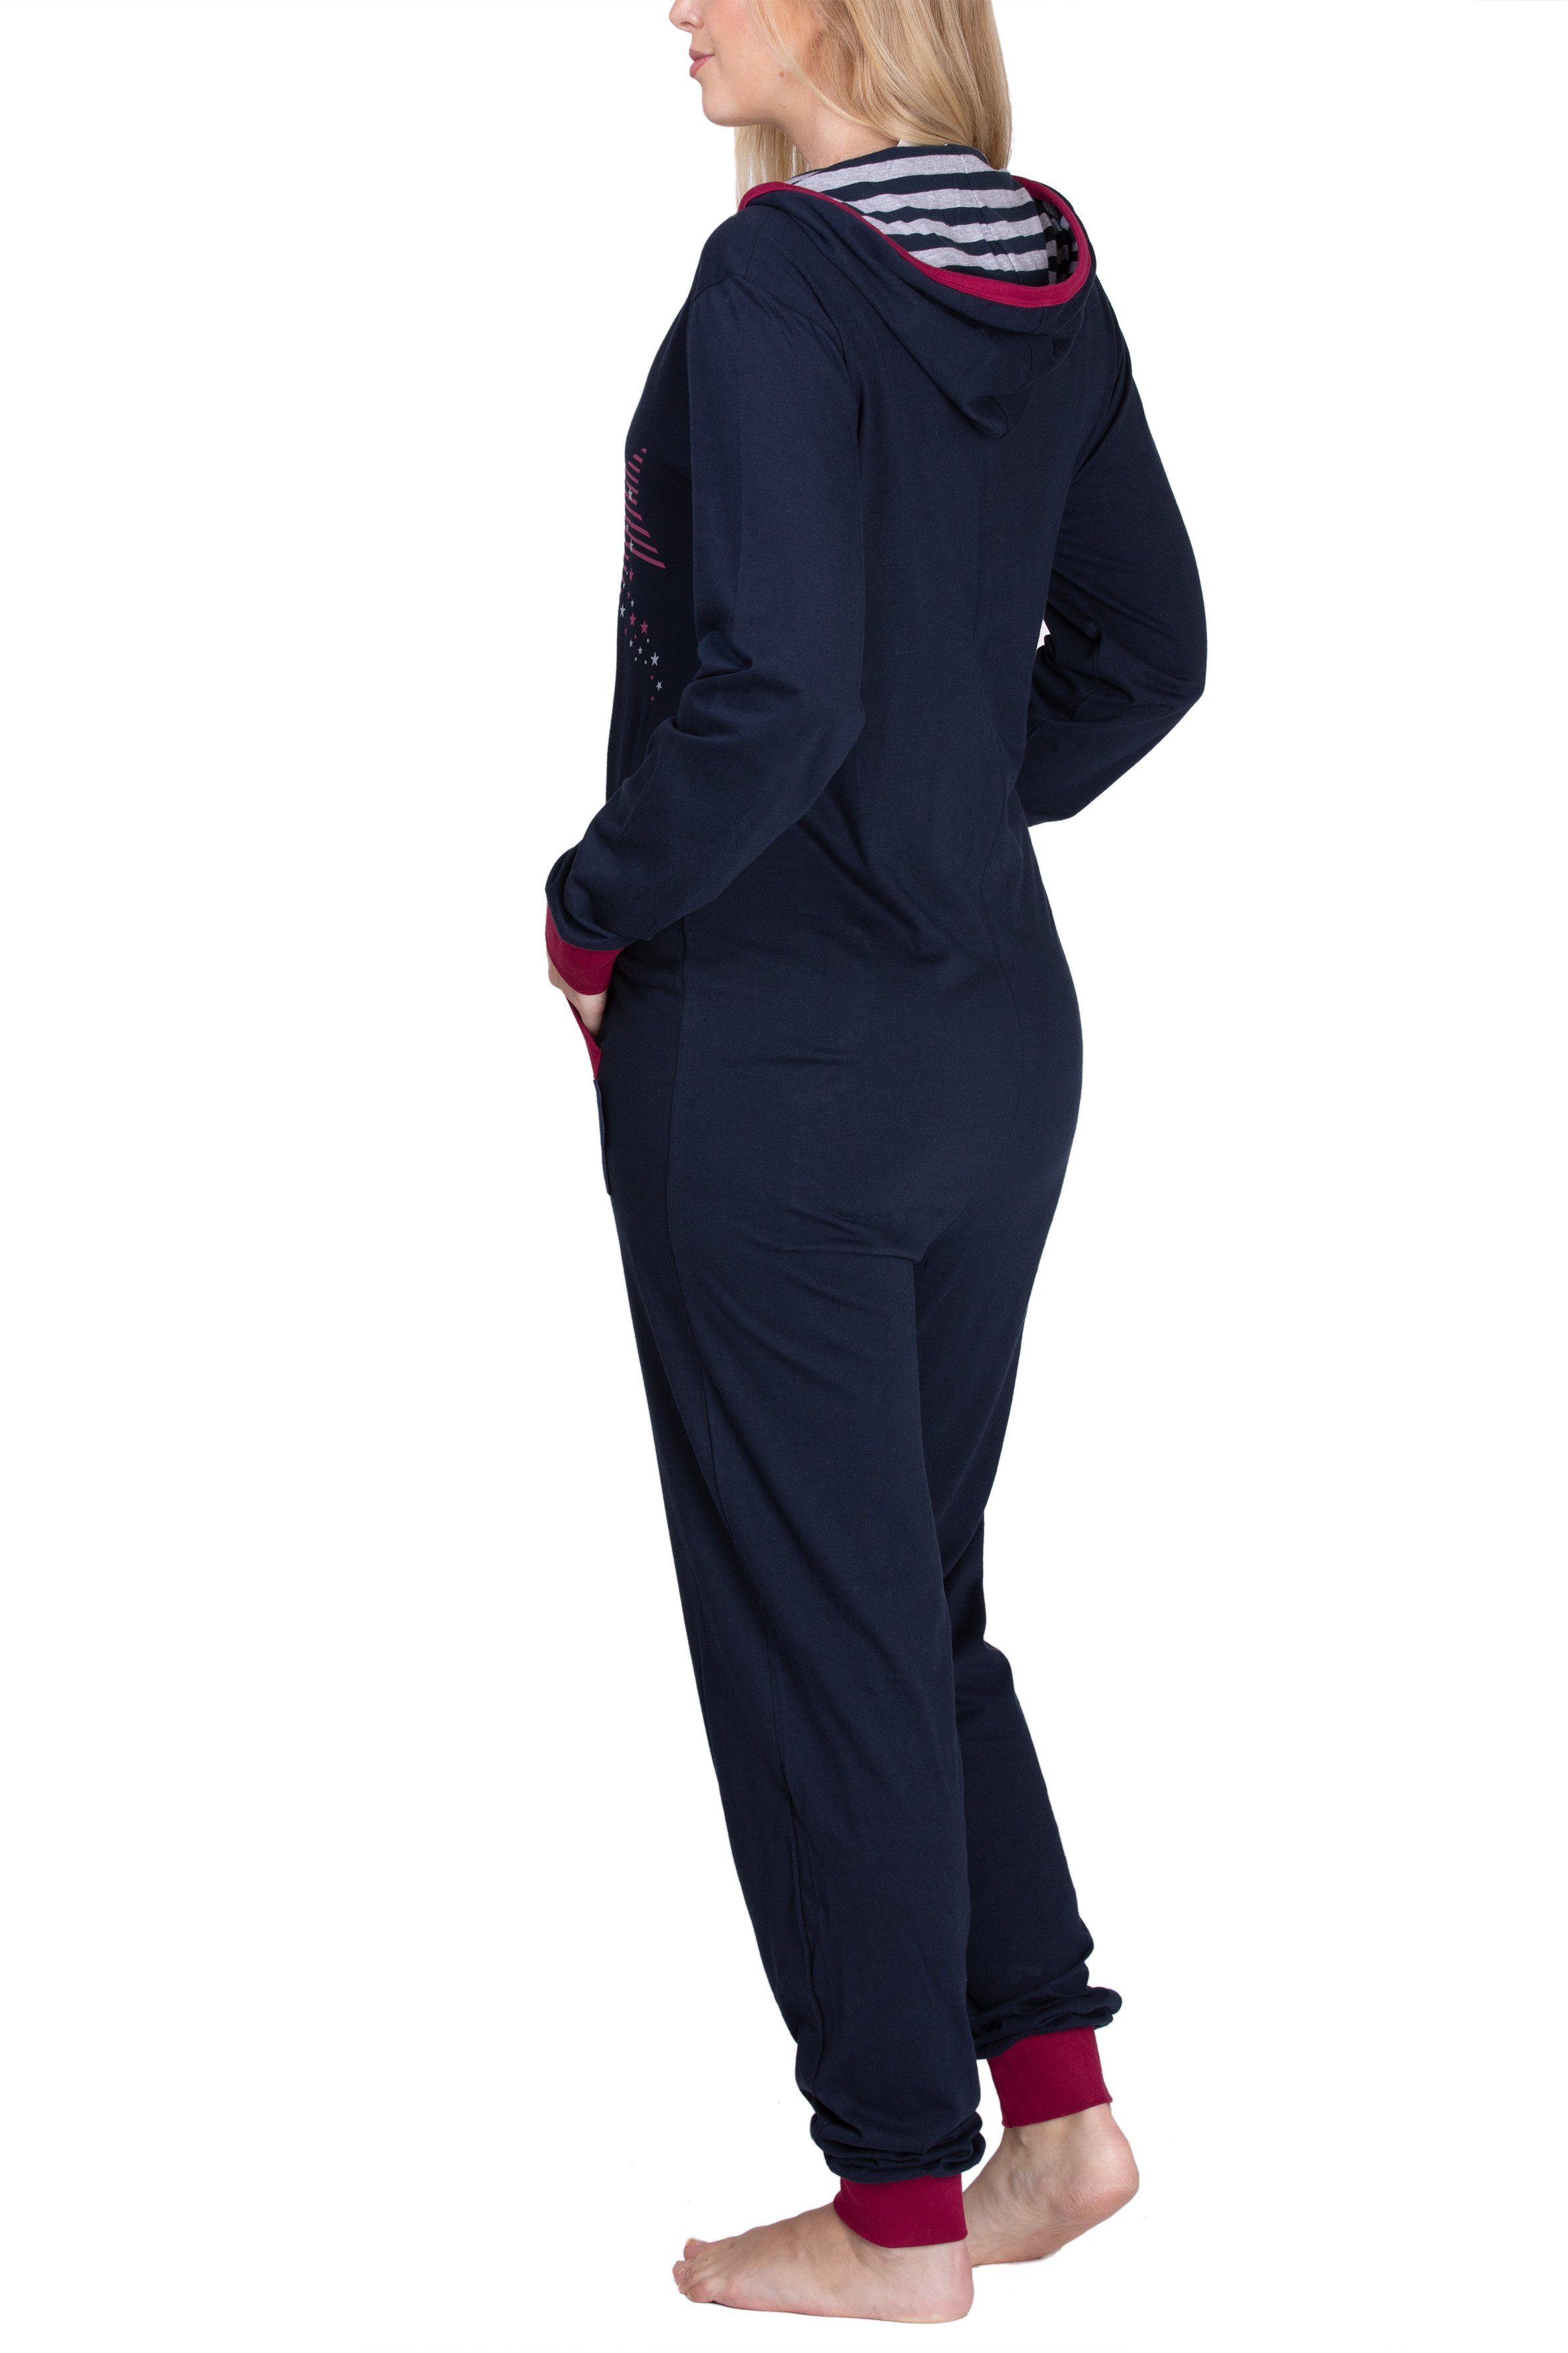 maluuna Schlafanzug Damen Jumpsuit, Onesie, mit 100% und Einteiler Beinabschluss aus Bündchen an Baumwolle anthrazit Overall, Arm